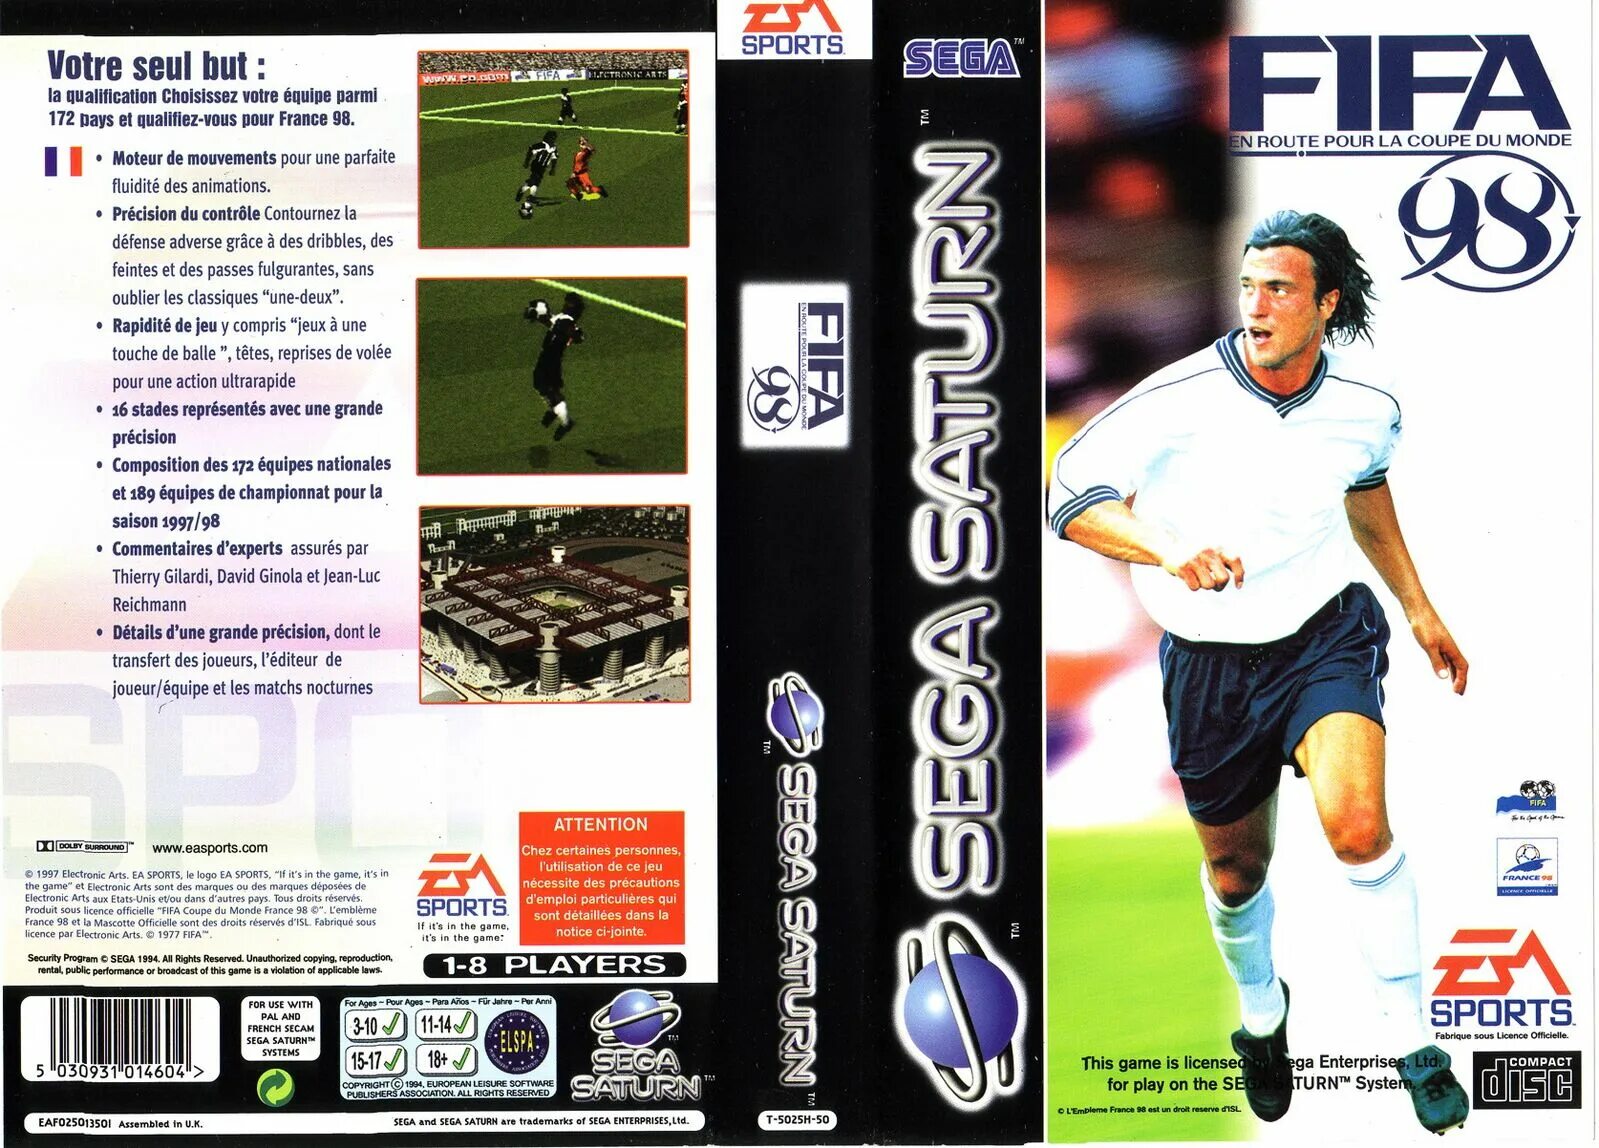 FIFA 98 Sega. FIFA Soccer 98 Sega Saturn. Sega картридж FIFA 1995. FIFA 98 Road to World Cup Sega.